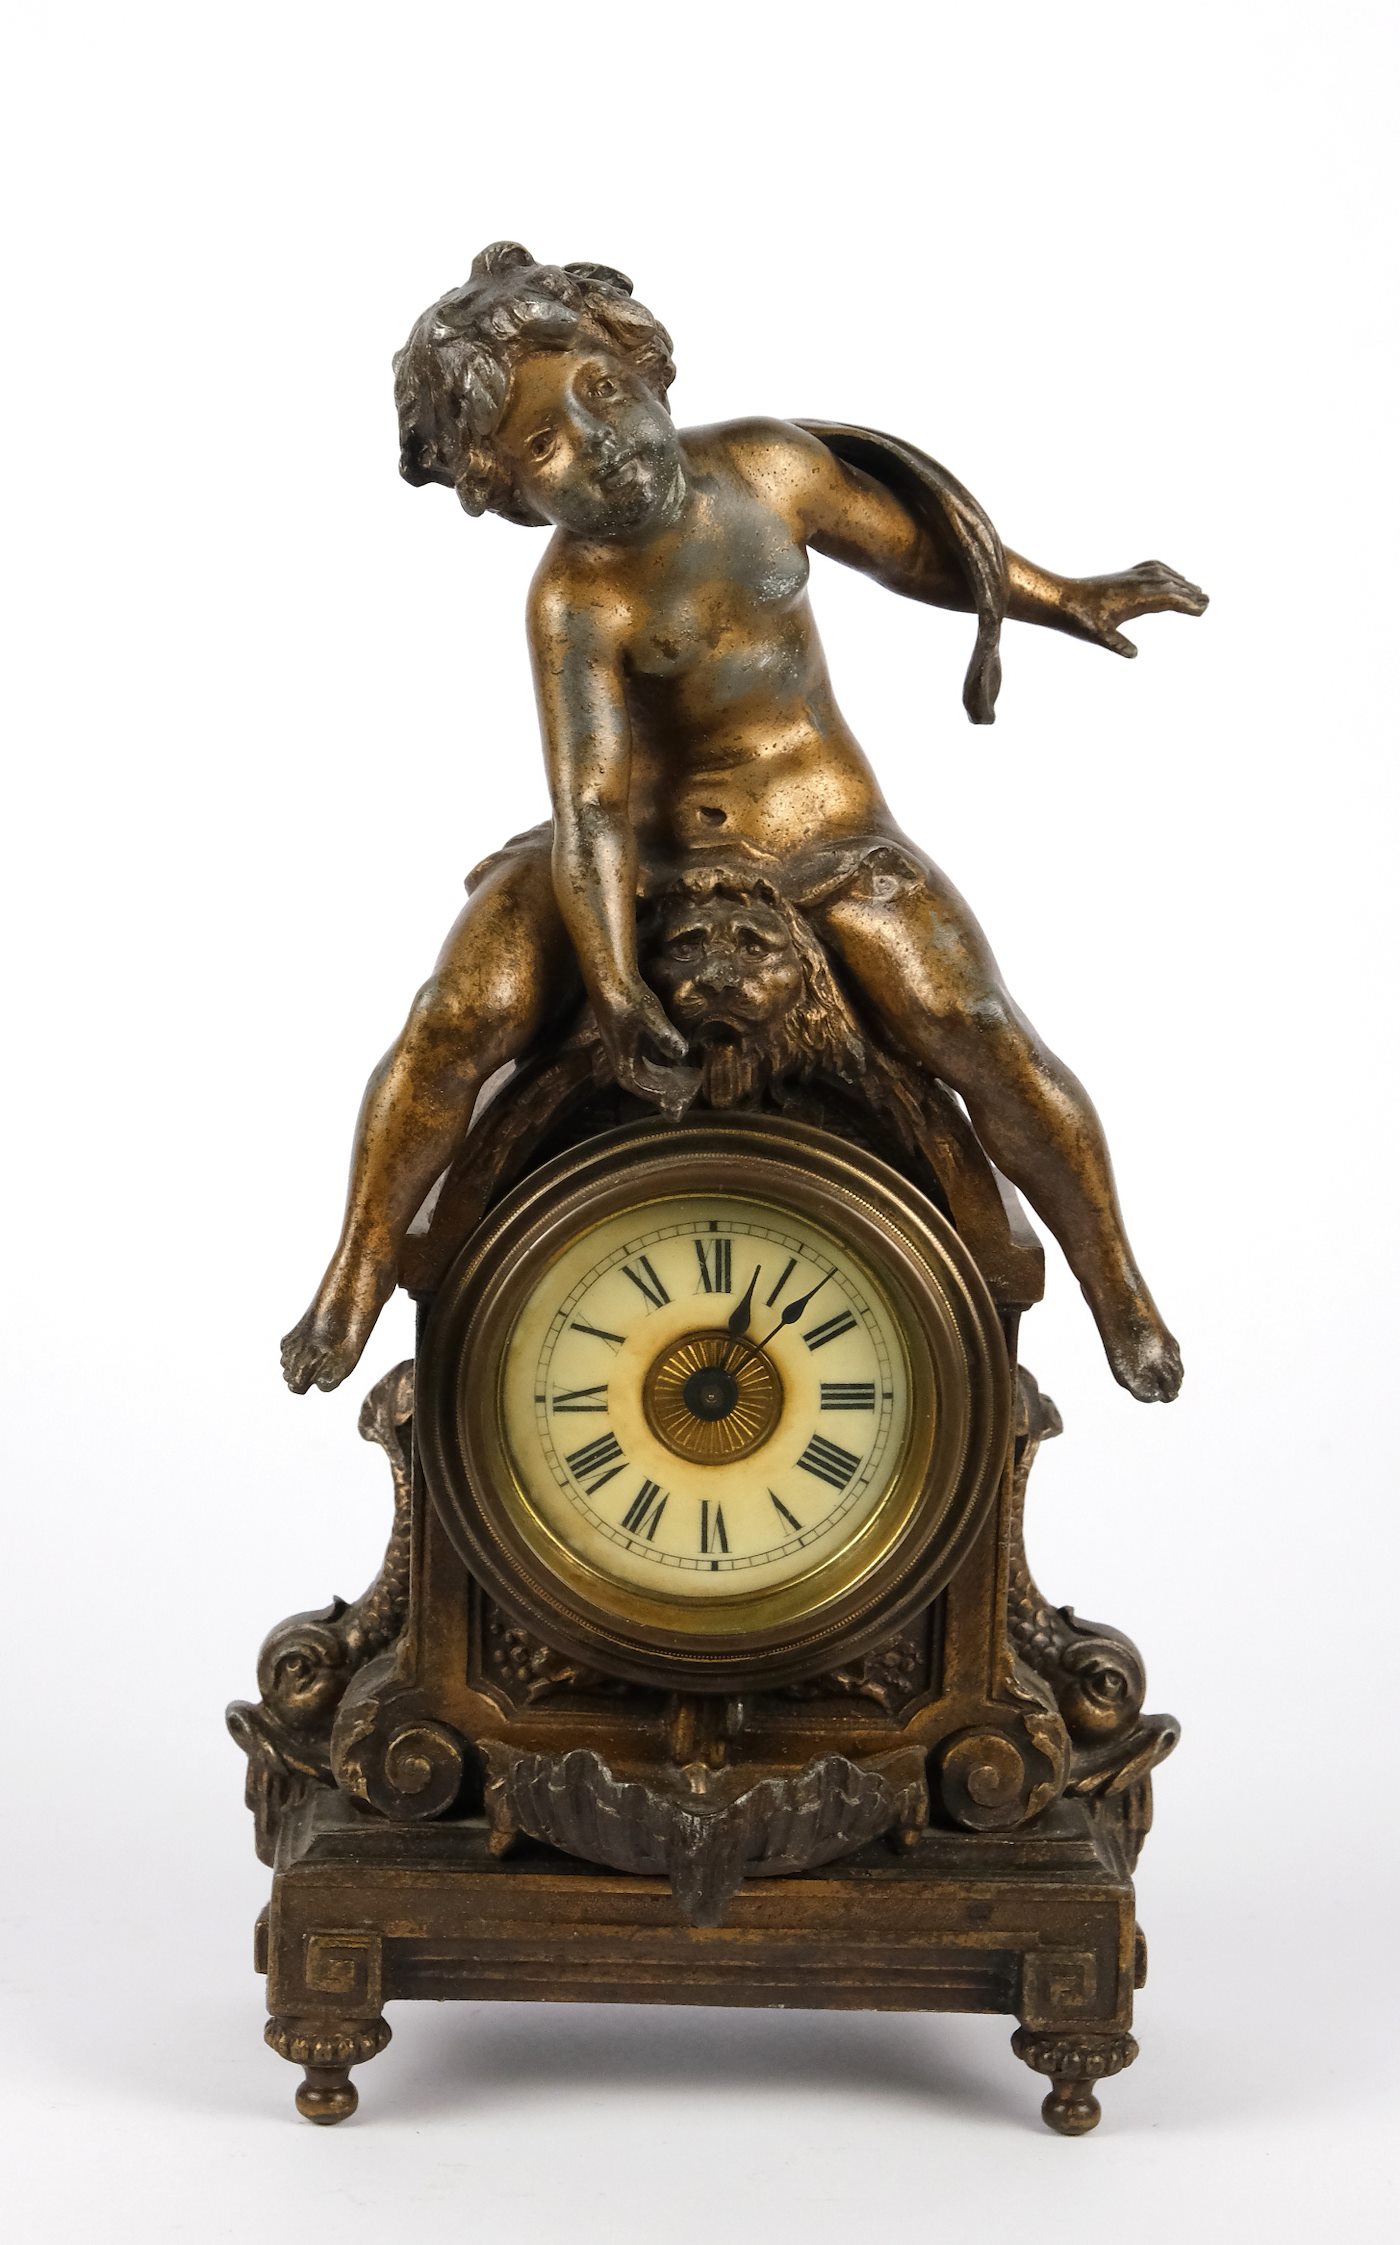 Moreau - Figurální hodiny s dvěma dózami